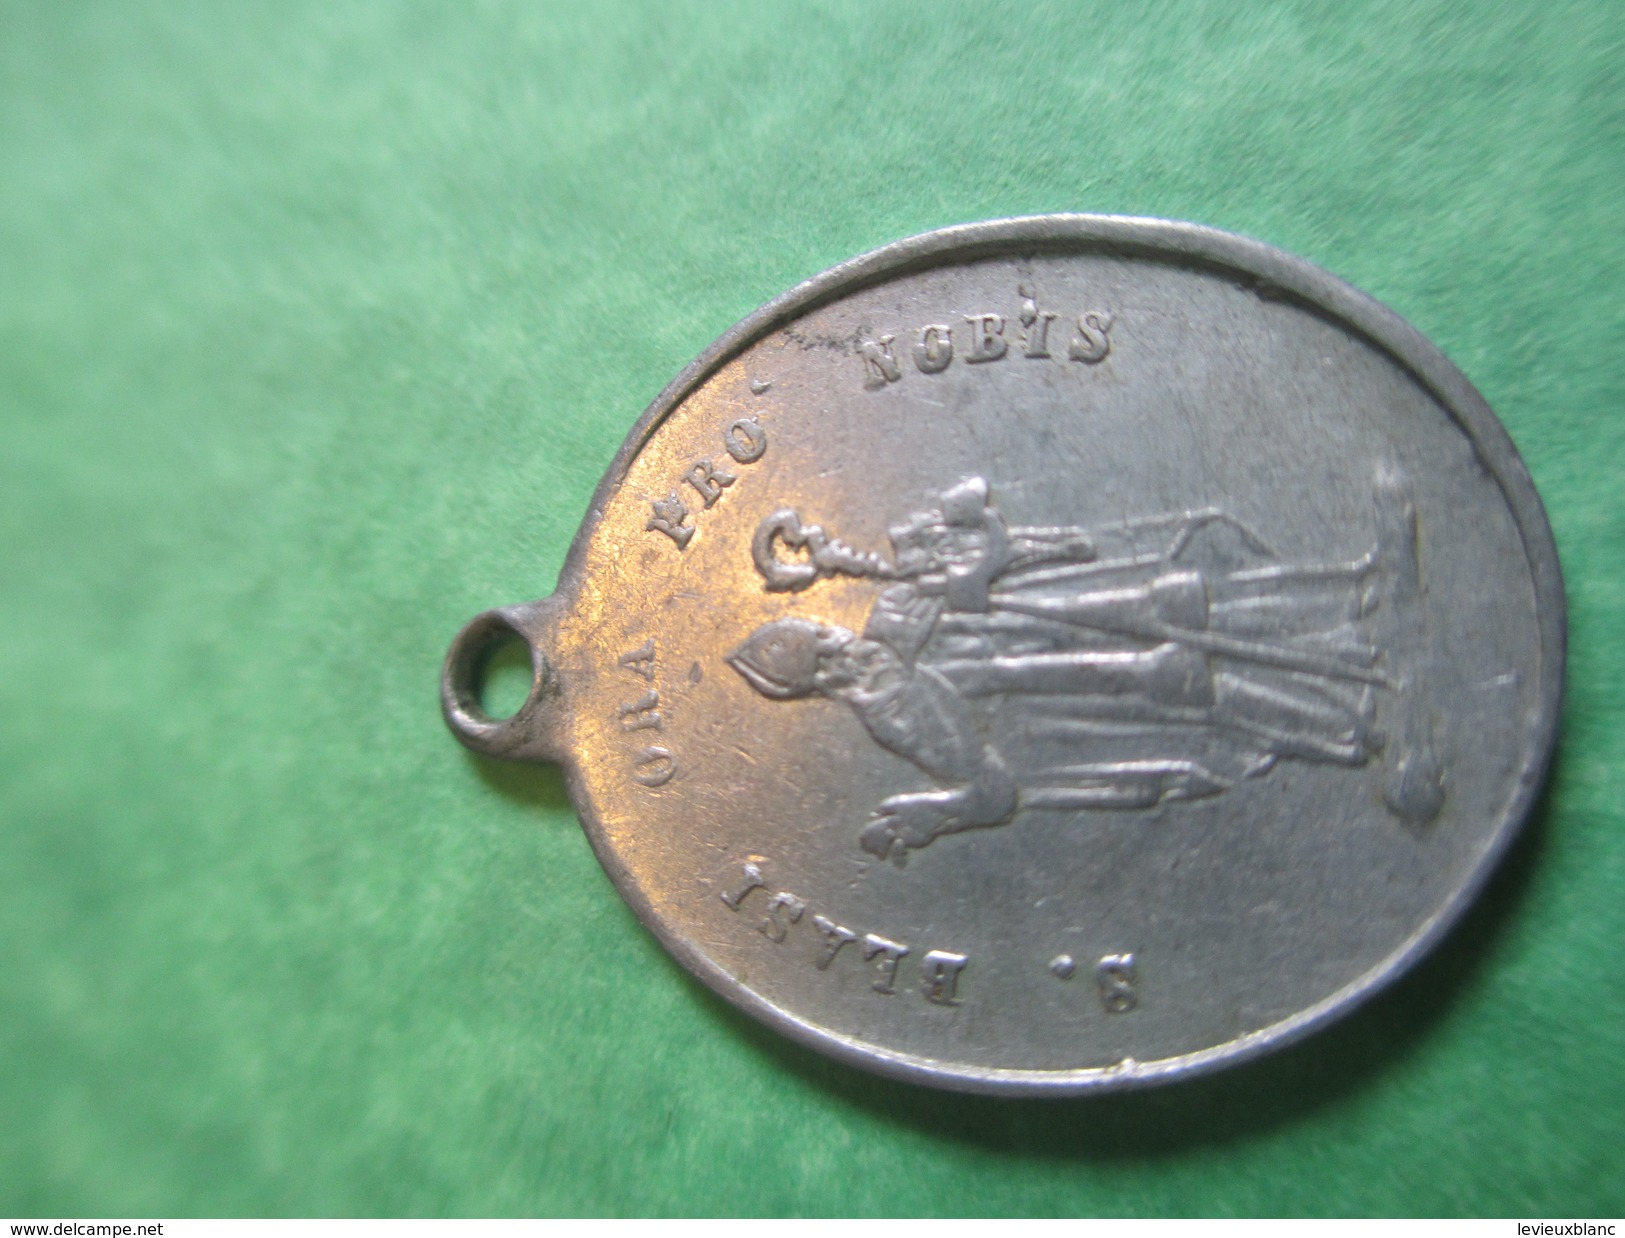 Petite Médaille Religieuse/Saint Blaise/Ange Gardien  /Début XXème Siècle     CAN357 - Religion &  Esoterik